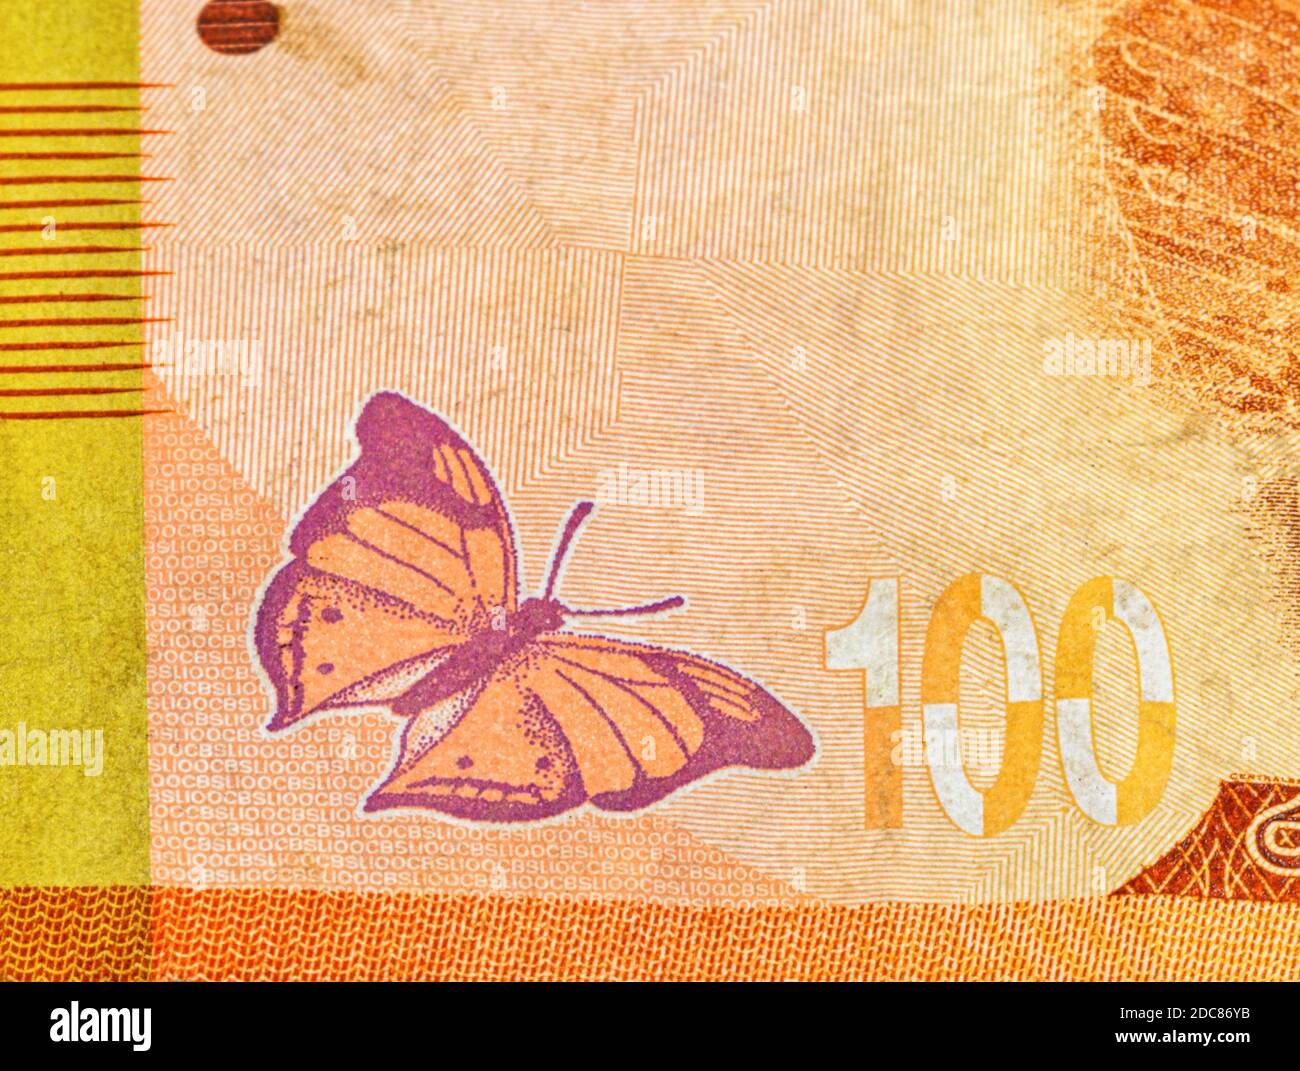 Fragmento de 100 rupias de Sri Lanka revierten billetes usados cierre con espacio de copia. Mariposa de hojas de otoño en la cuenta. Foto de stock